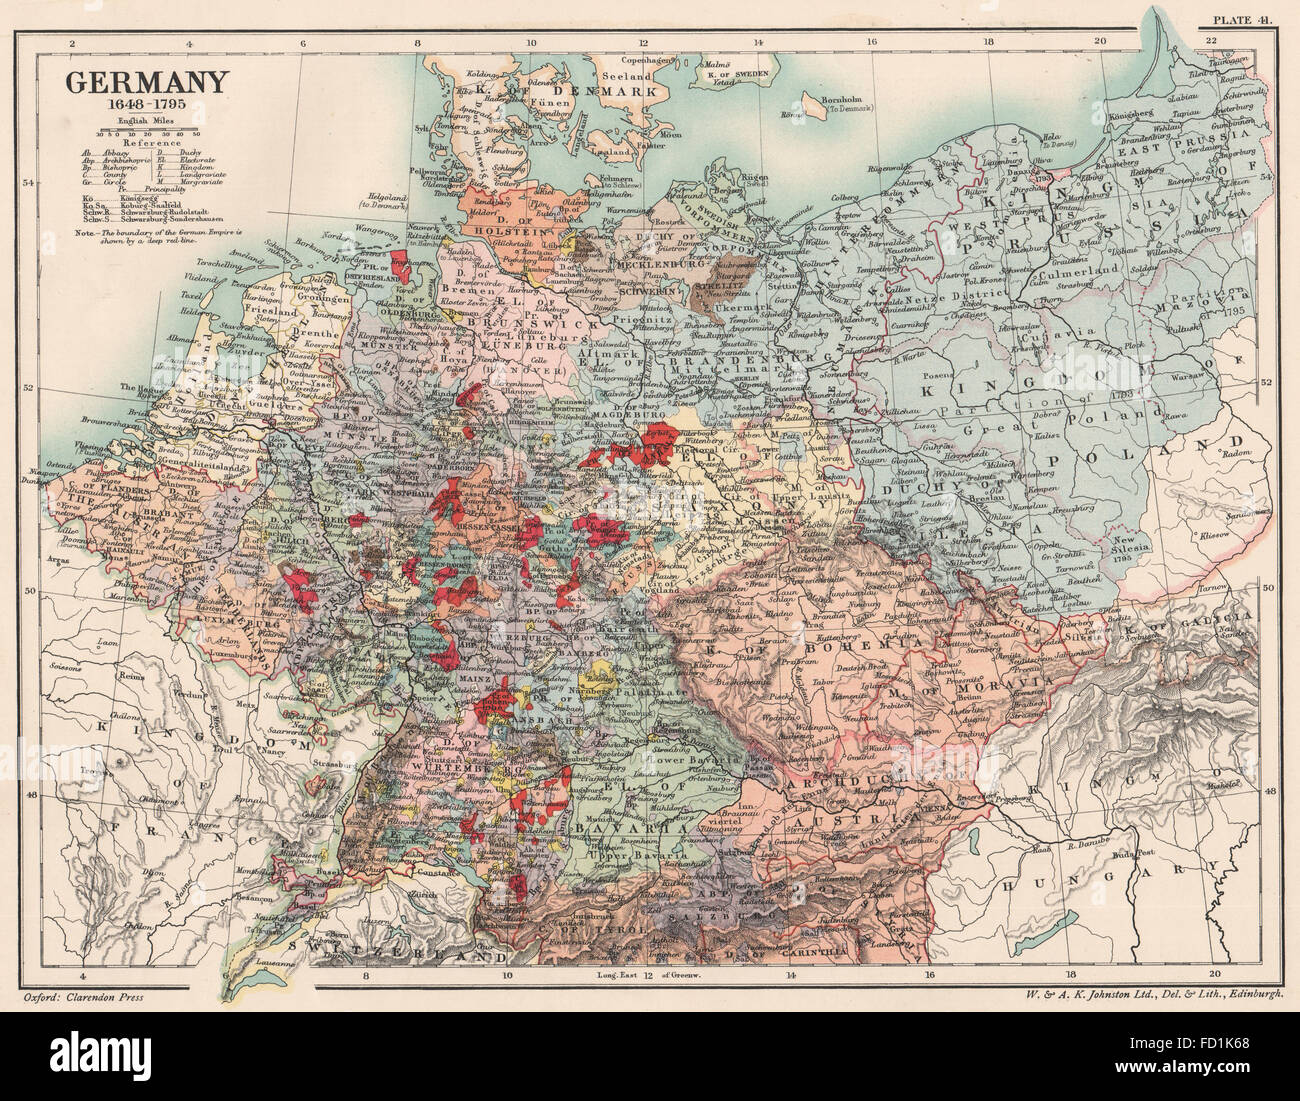 Historische Karte Reprint Postkutschenstrecken Deutschland 1795 